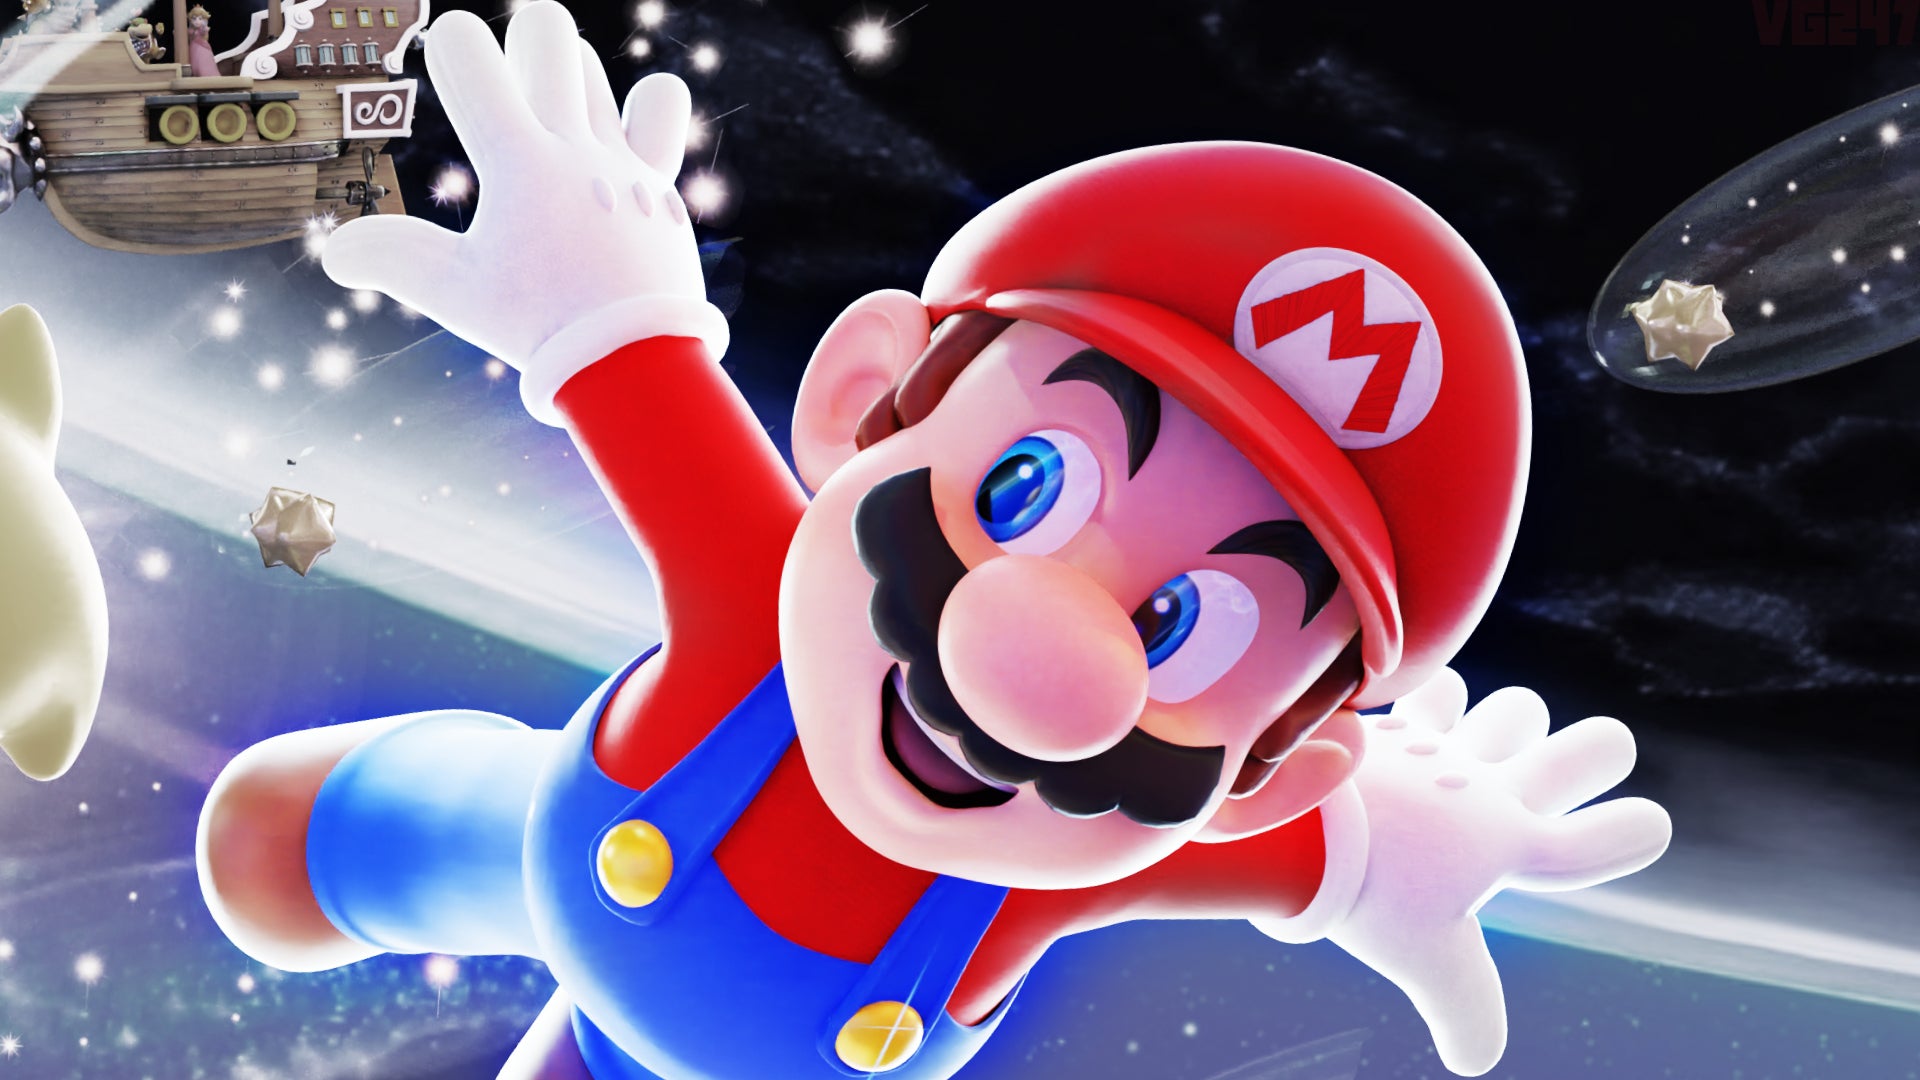 Super Mario Galaxy là một trong những tựa game tuyệt vời nhất trong thế giới Mario! Trong trò chơi này, bạn sẽ đồng hành cùng Mario và người bạn mới Luma để khám phá vũ trụ và đánh bại Bowser. Hãy xem hình ảnh để cảm nhận sự đặc sắc và hoành tráng của trò chơi này.